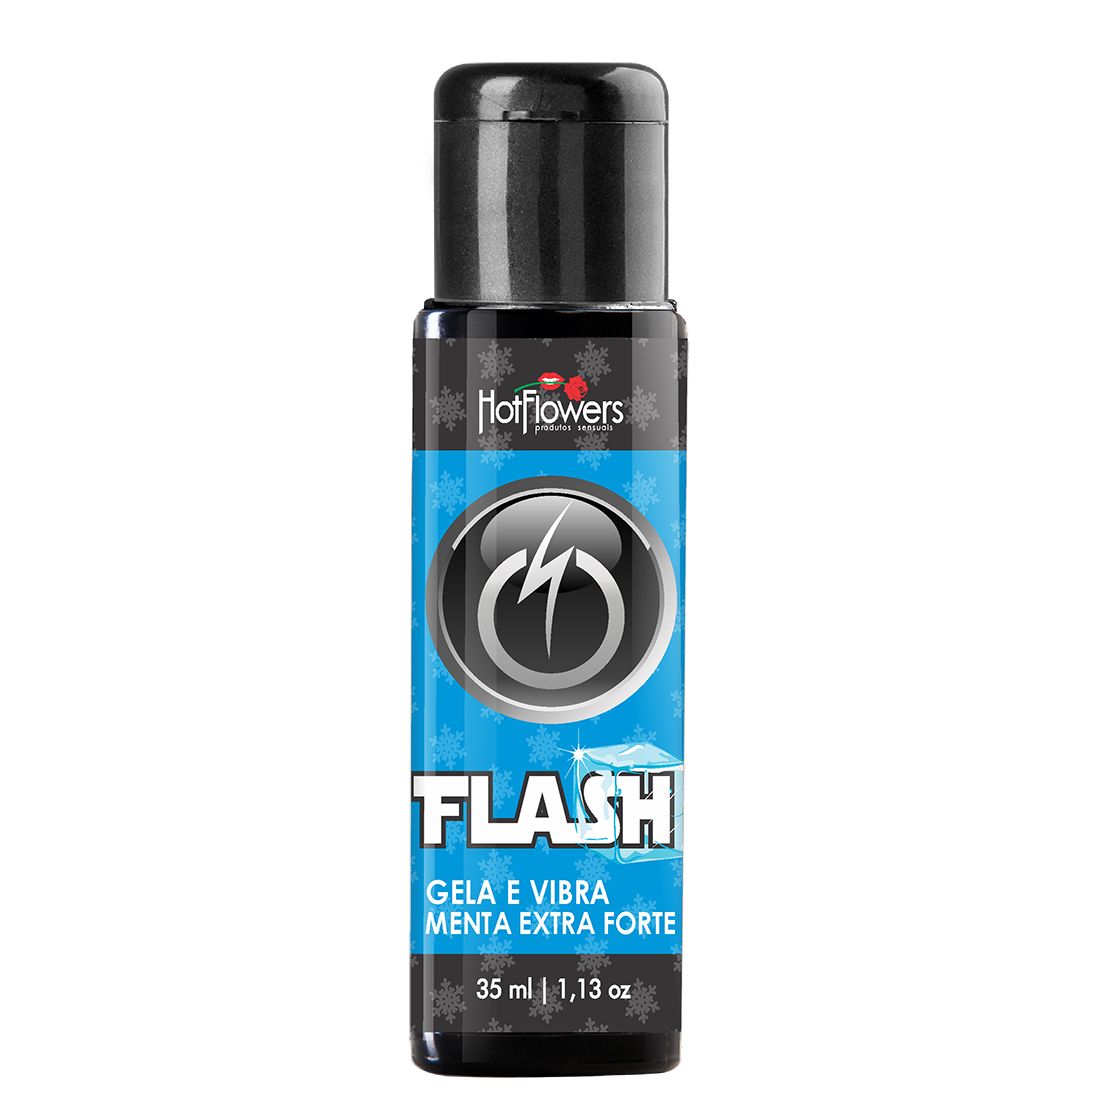 Стимулирующий гель Flash Menta Extra Forte с ароматом мяты и эффектом вибрации идеально подходит для орального секса или чувственного массажа.